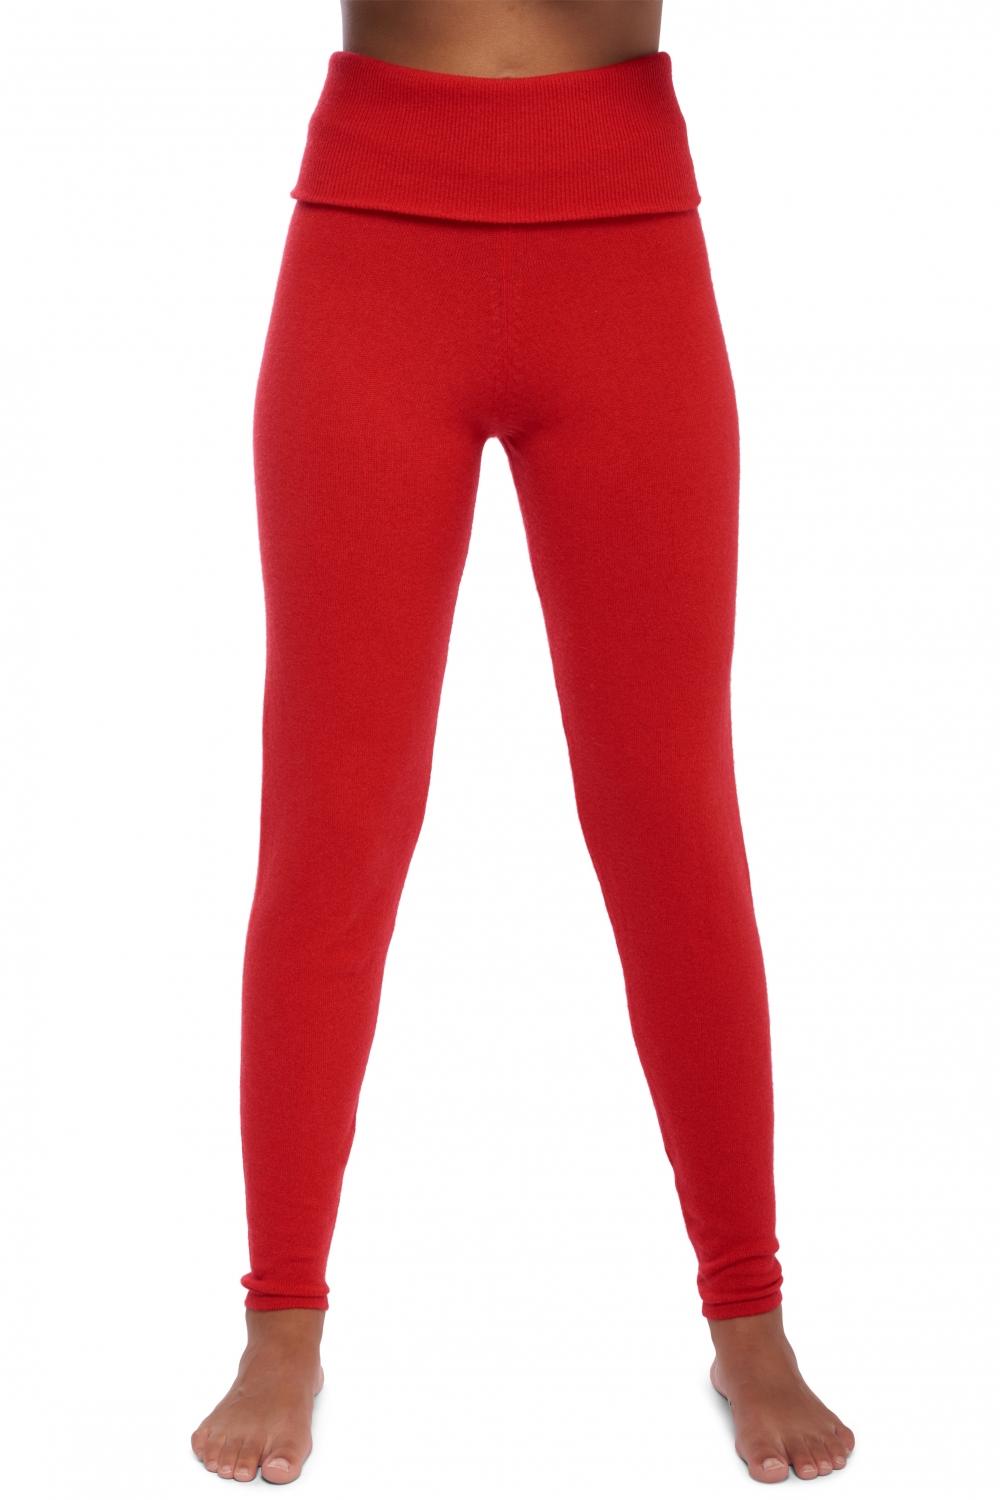 Cachemire pantalon legging femme shirley rouge 3xl